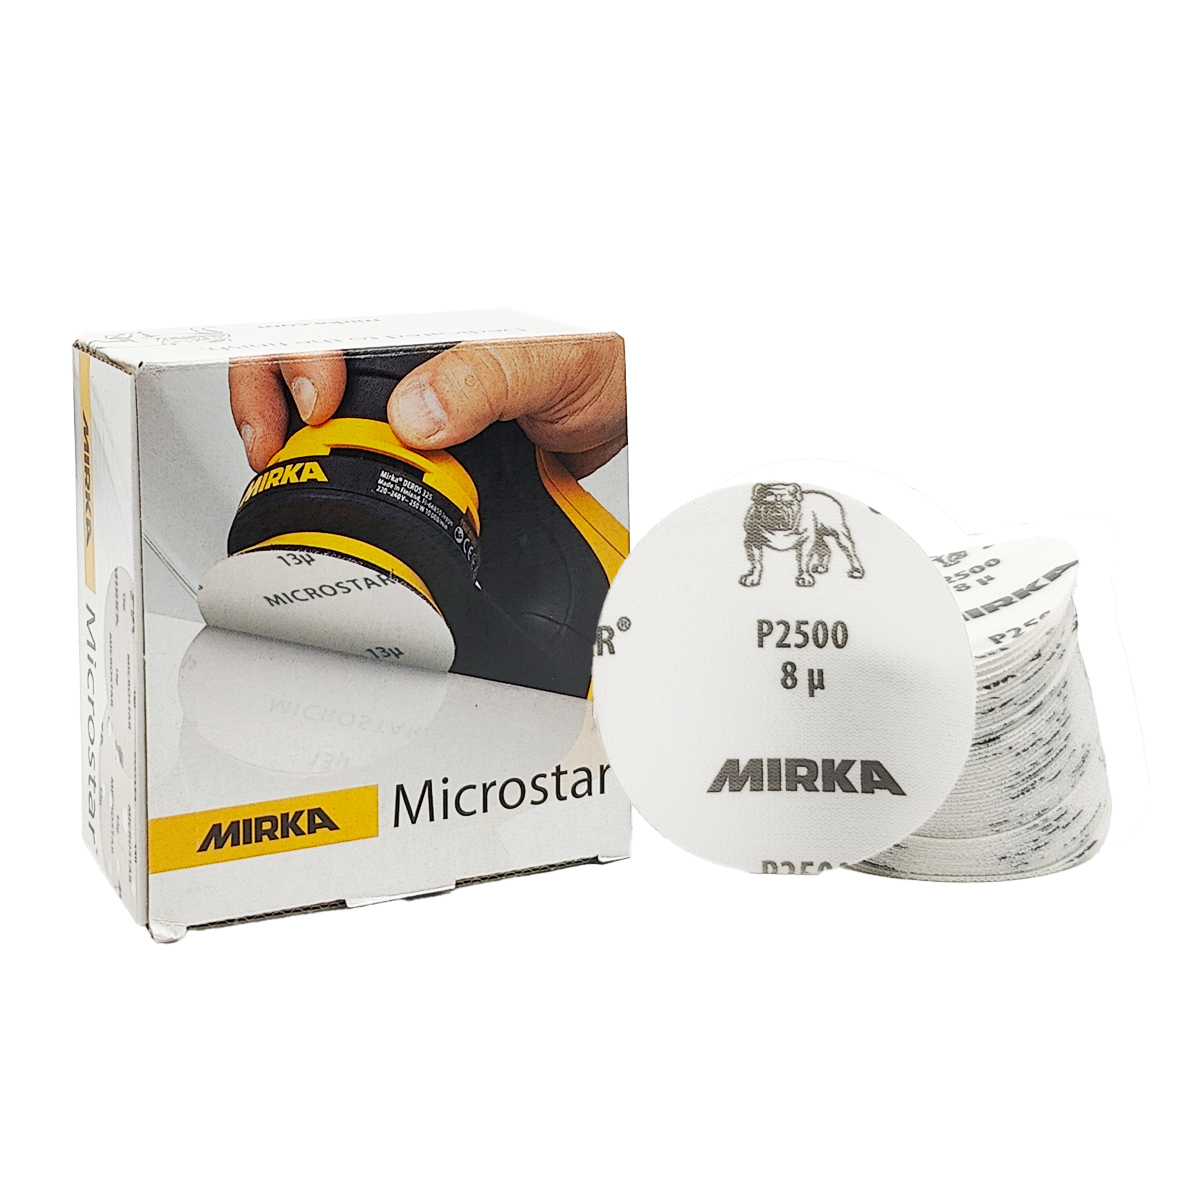 Abbildung Mirka Microstar 77mm Verpackung und Scheiben als Stapel.